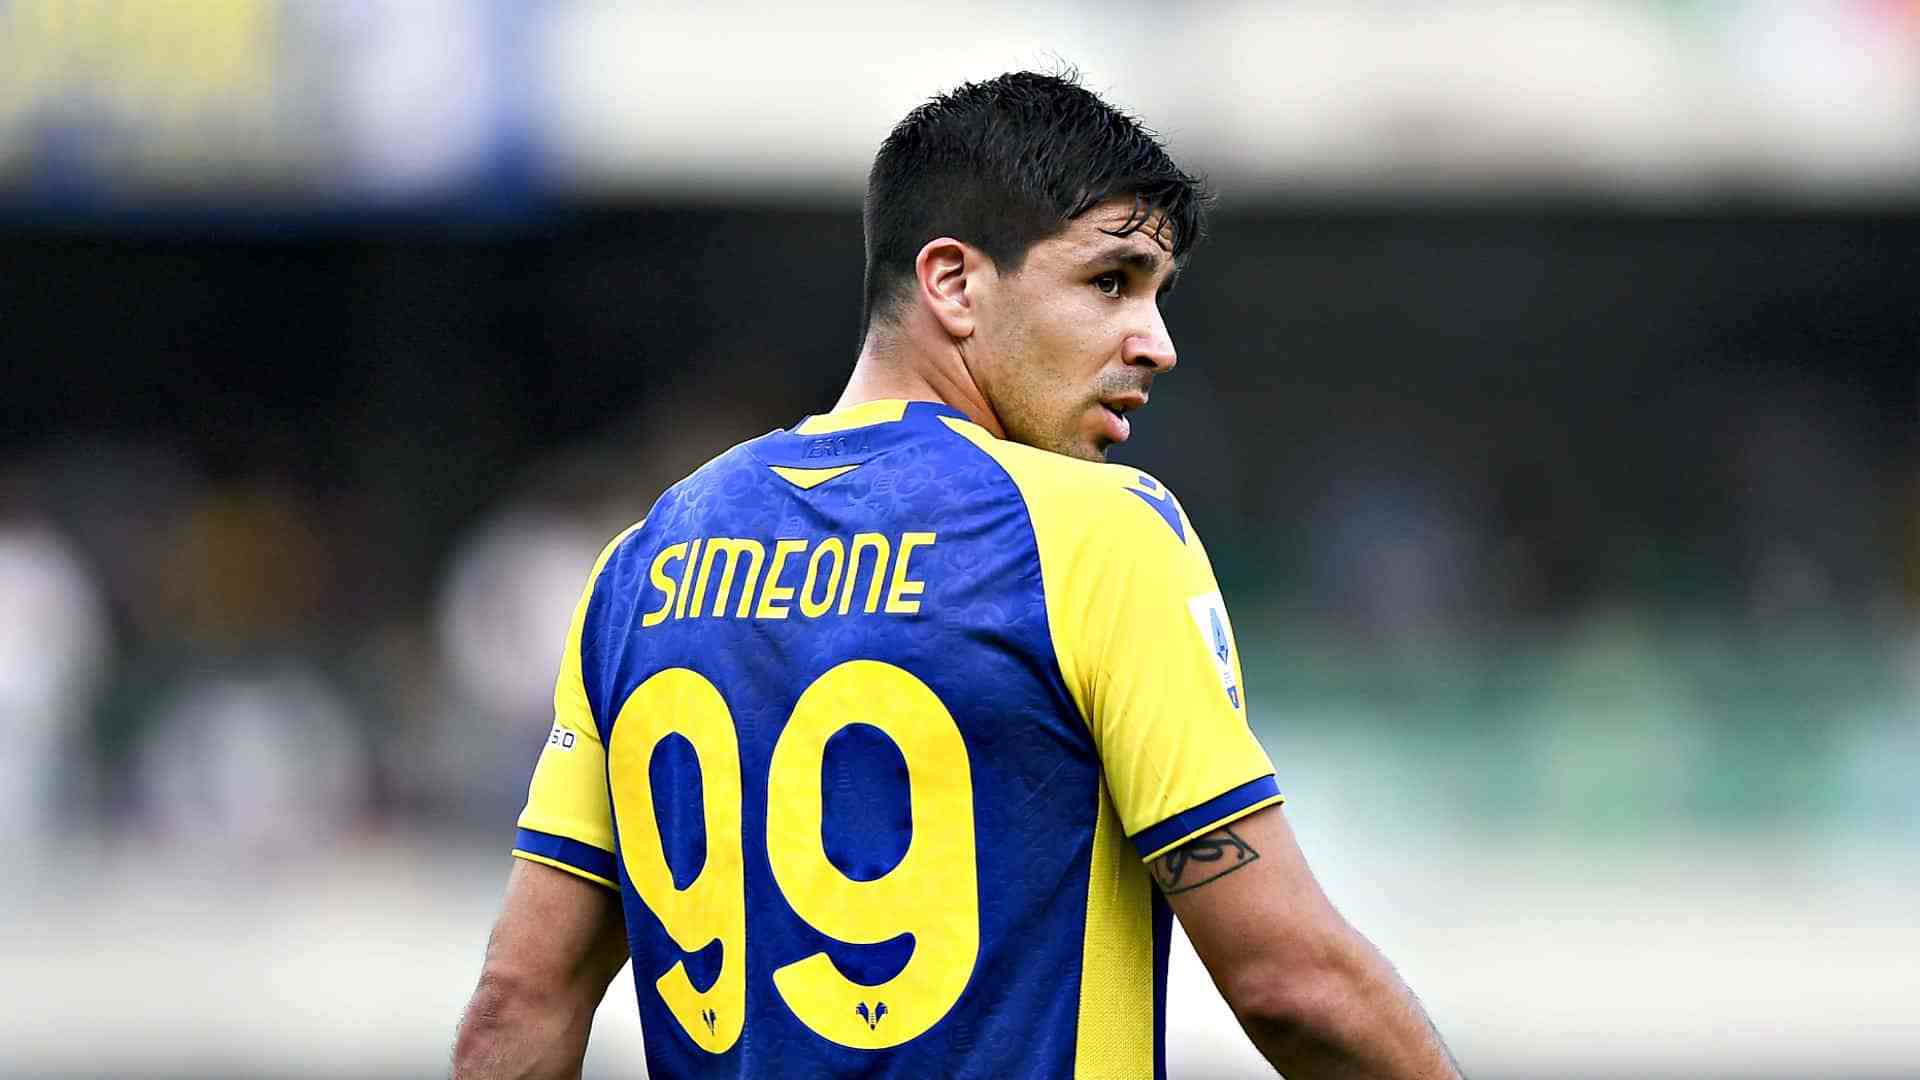 Verona Napoli: Simeone convocato da Spalletti, corsa contro il tempo